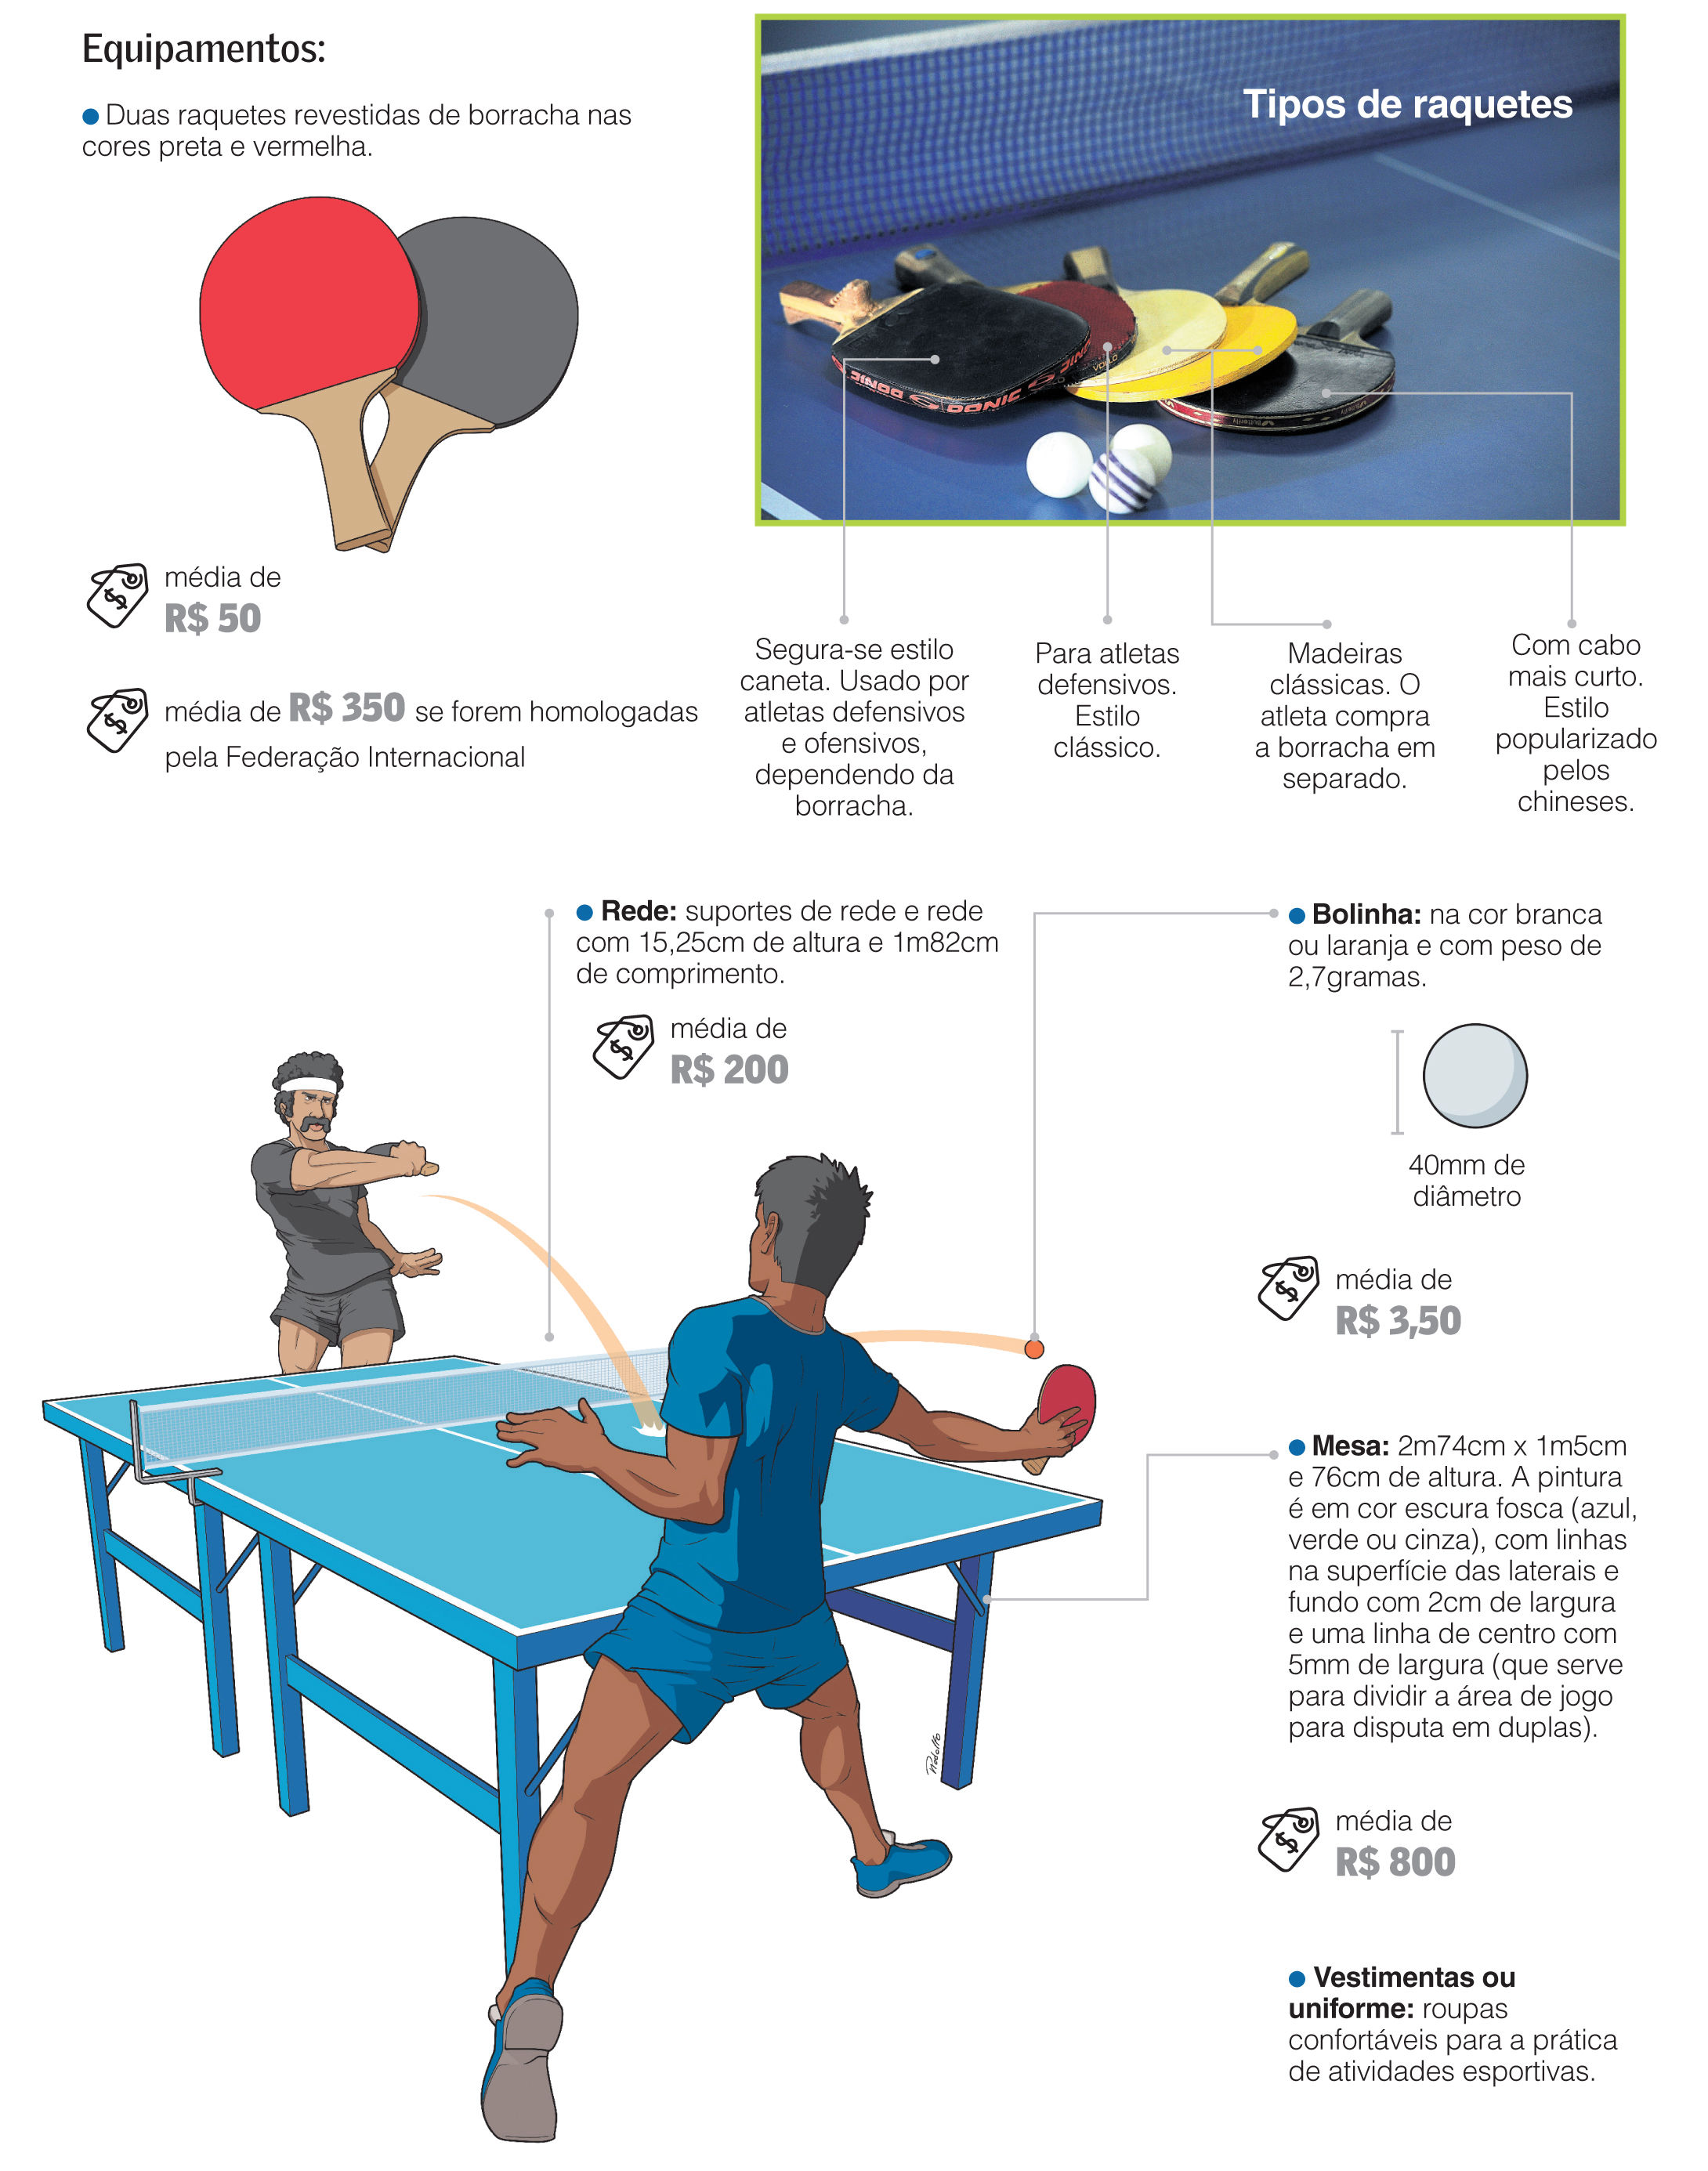 Legenda do jogo tênis de mesa ping pong hobby esporte interesse citação